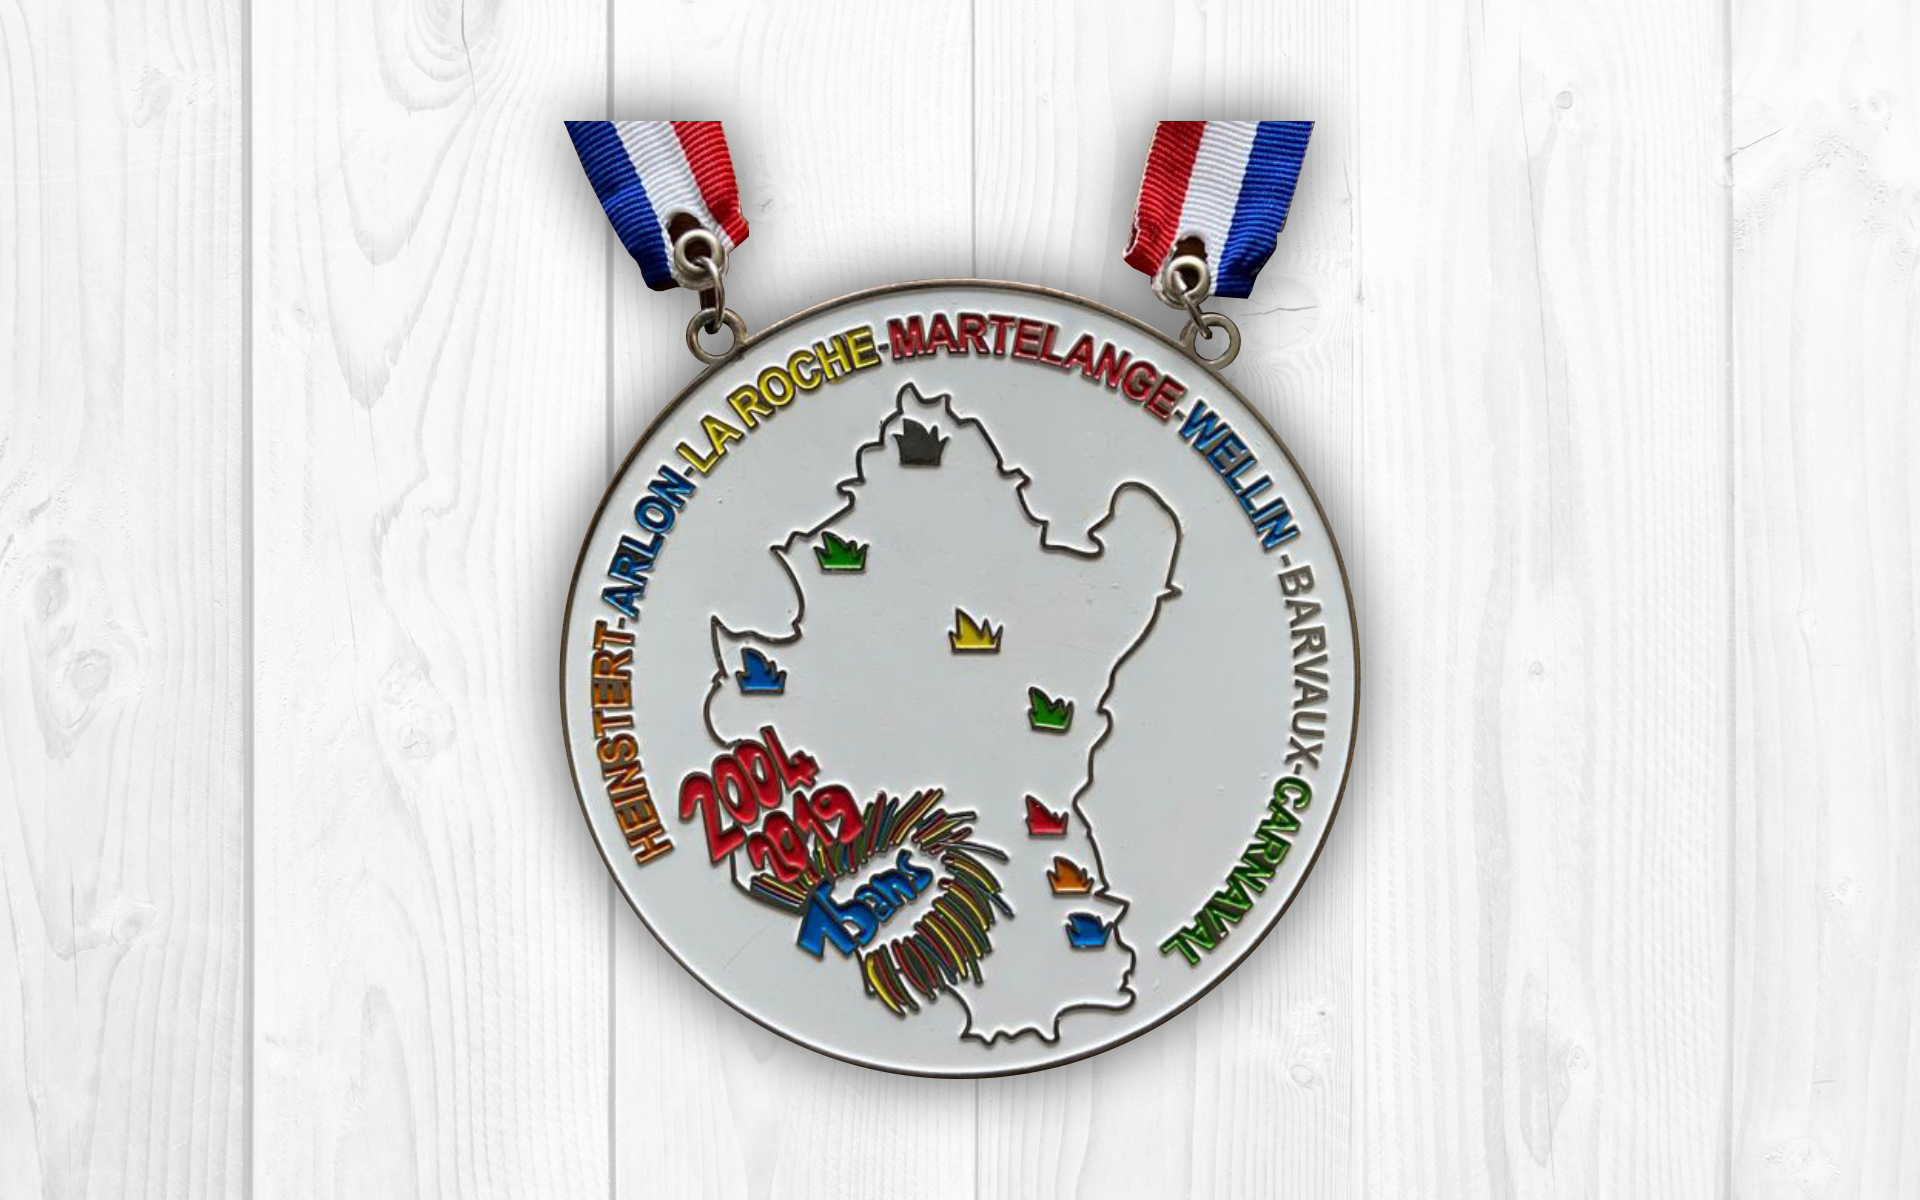 Carnaval de Martelange, 2019 - Medaille des 15 ans de Carl 1er